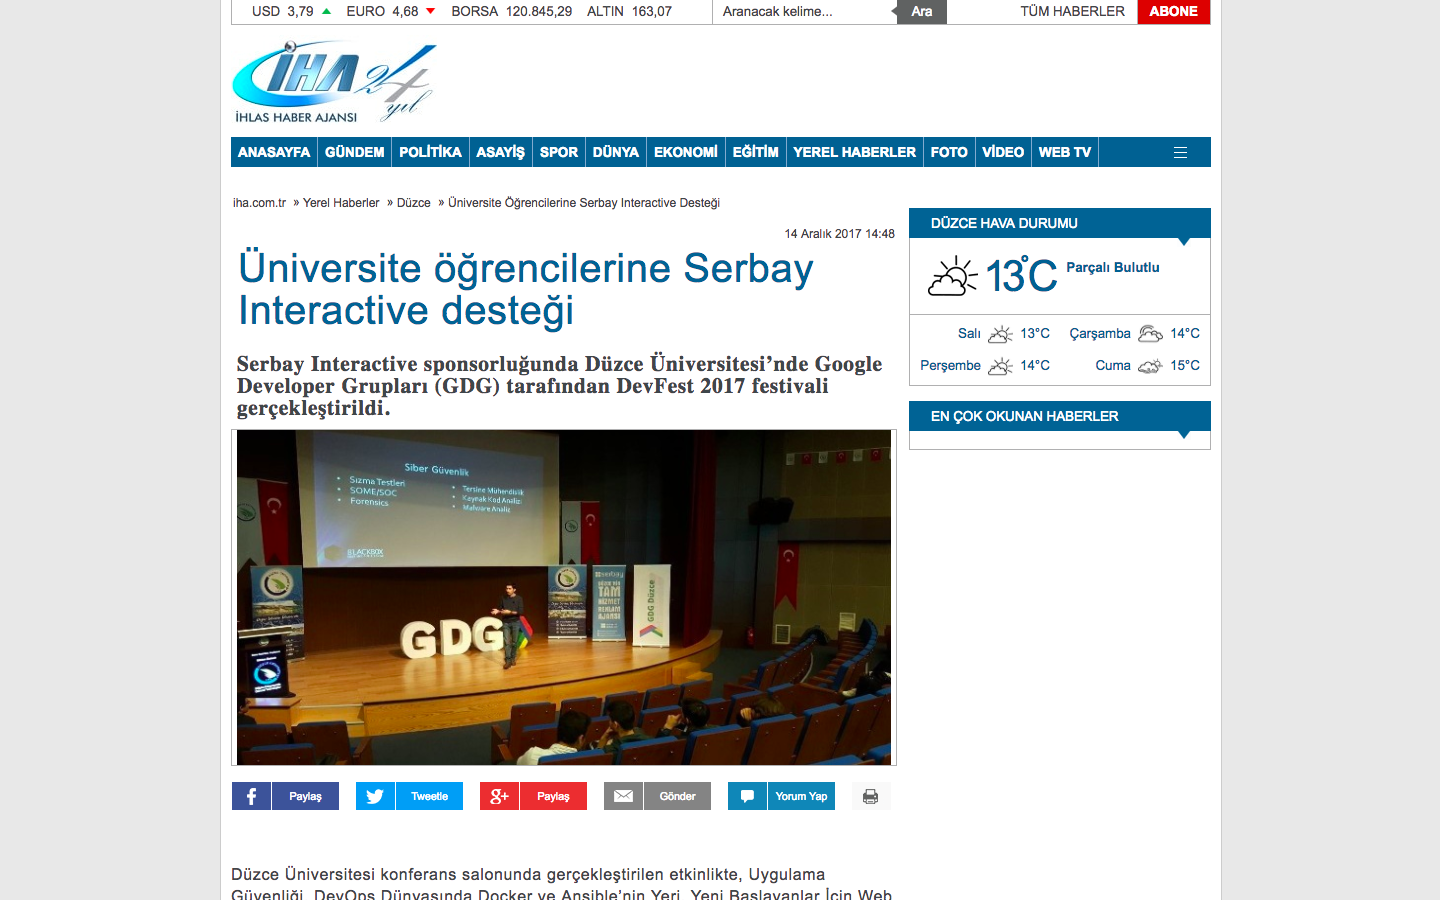 Üniversite öğrencilerine Serbay Interactive Desteği haberi ulusal basında.